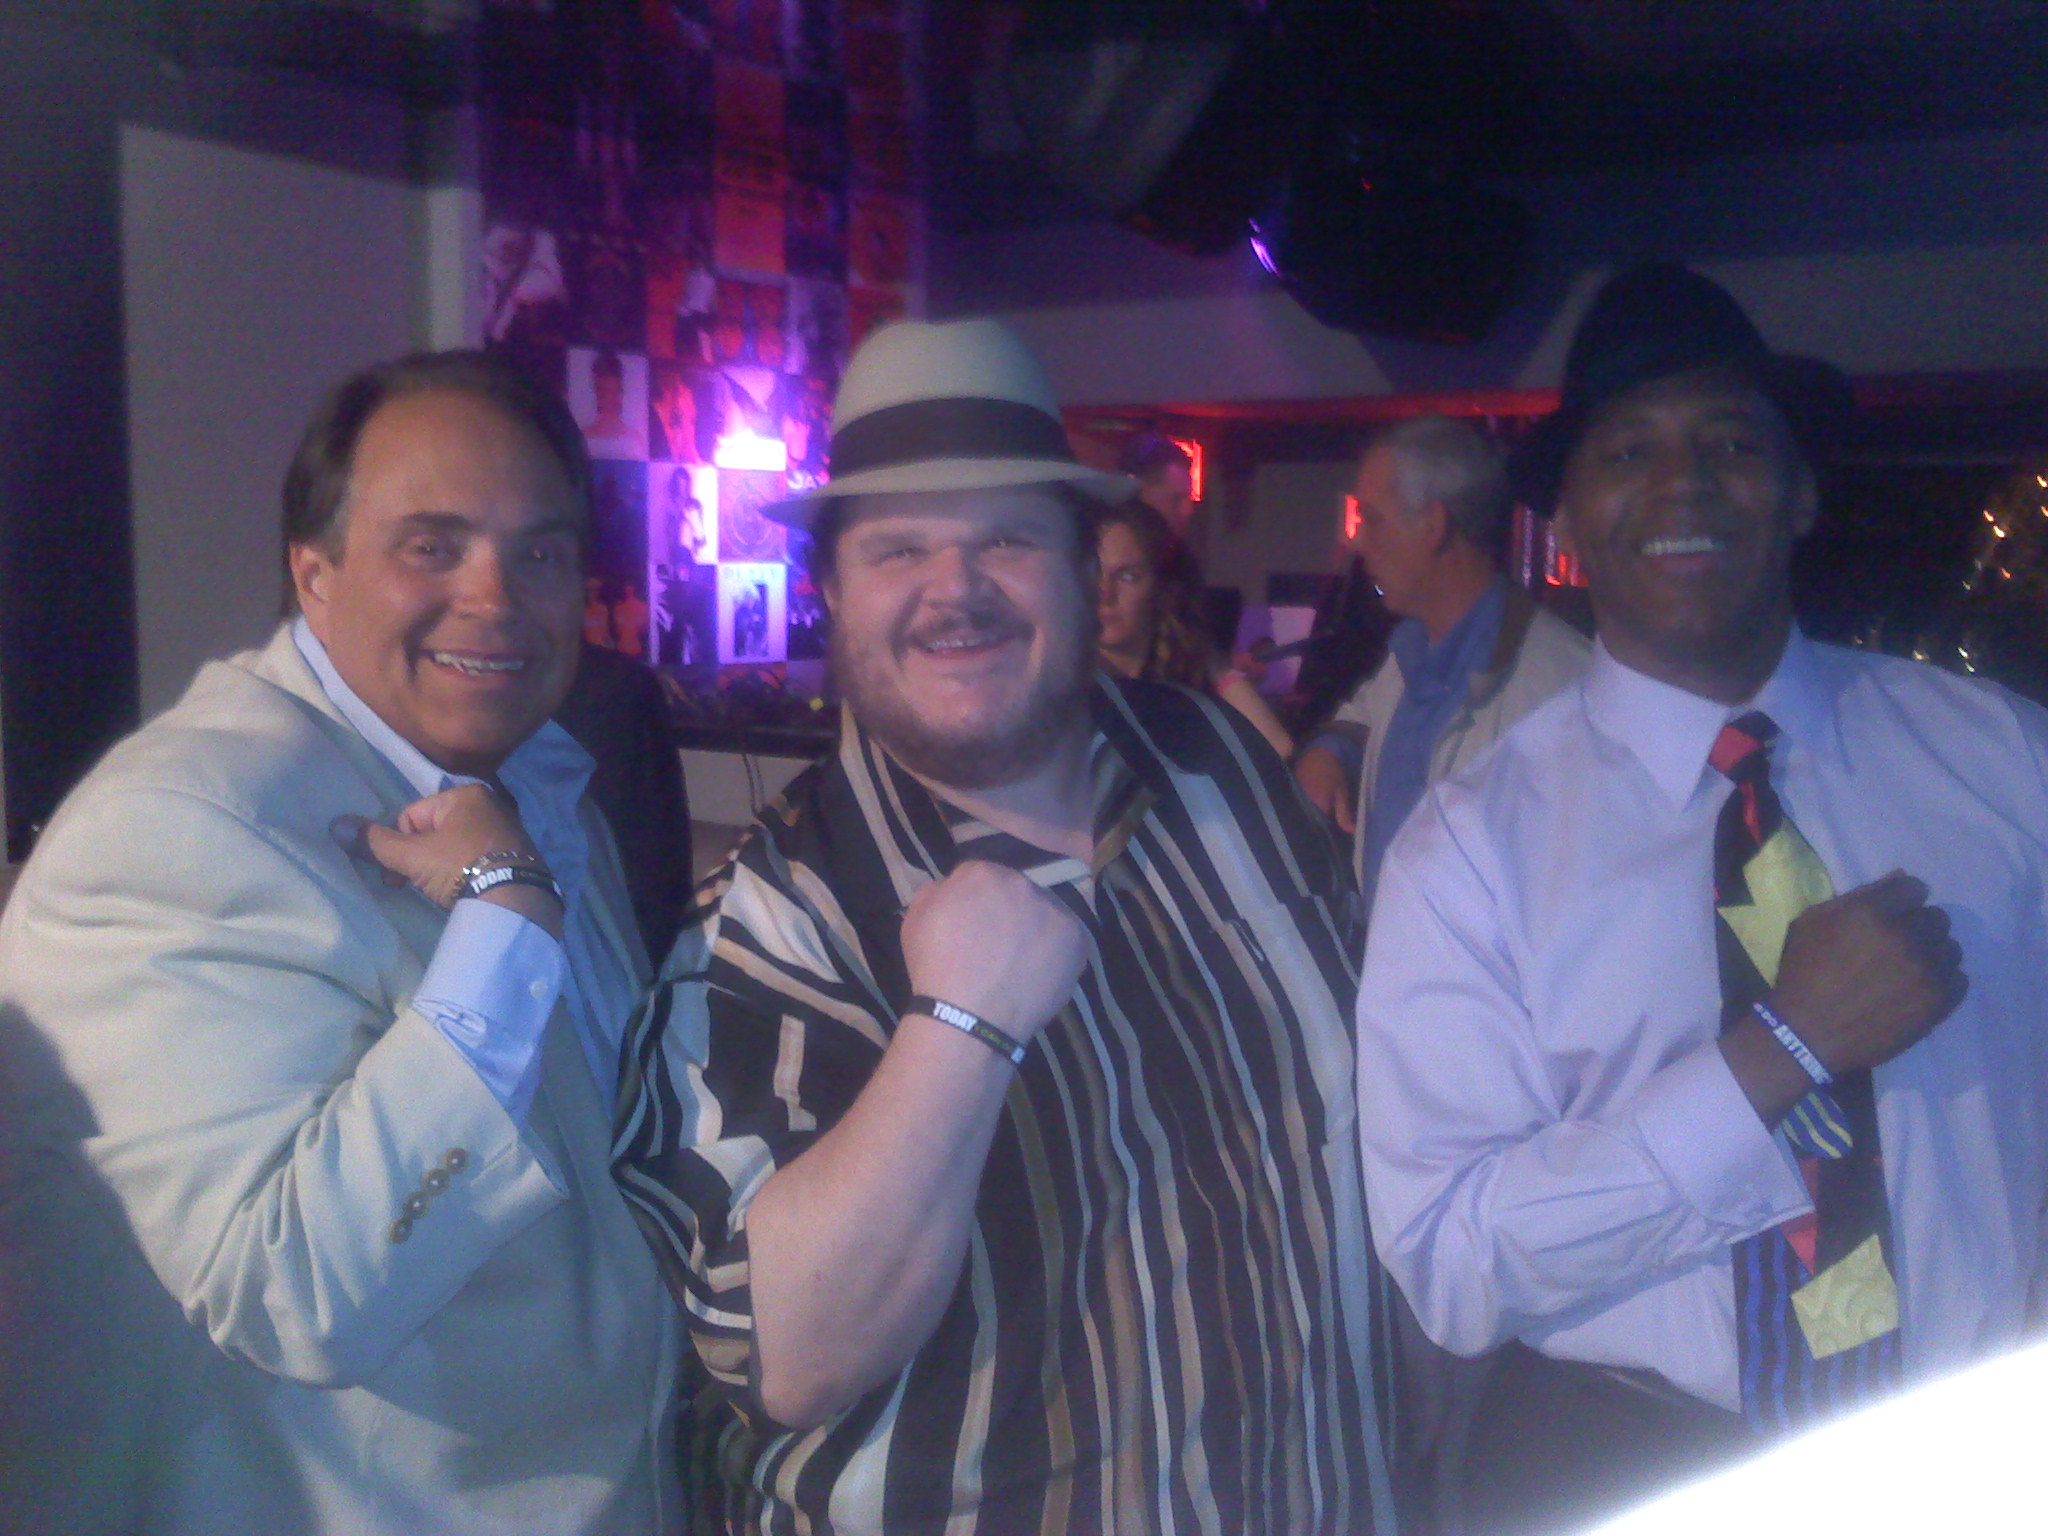 John Woodward, Bubba Da Skitso & Gary Johnny at the My Life My Power event.